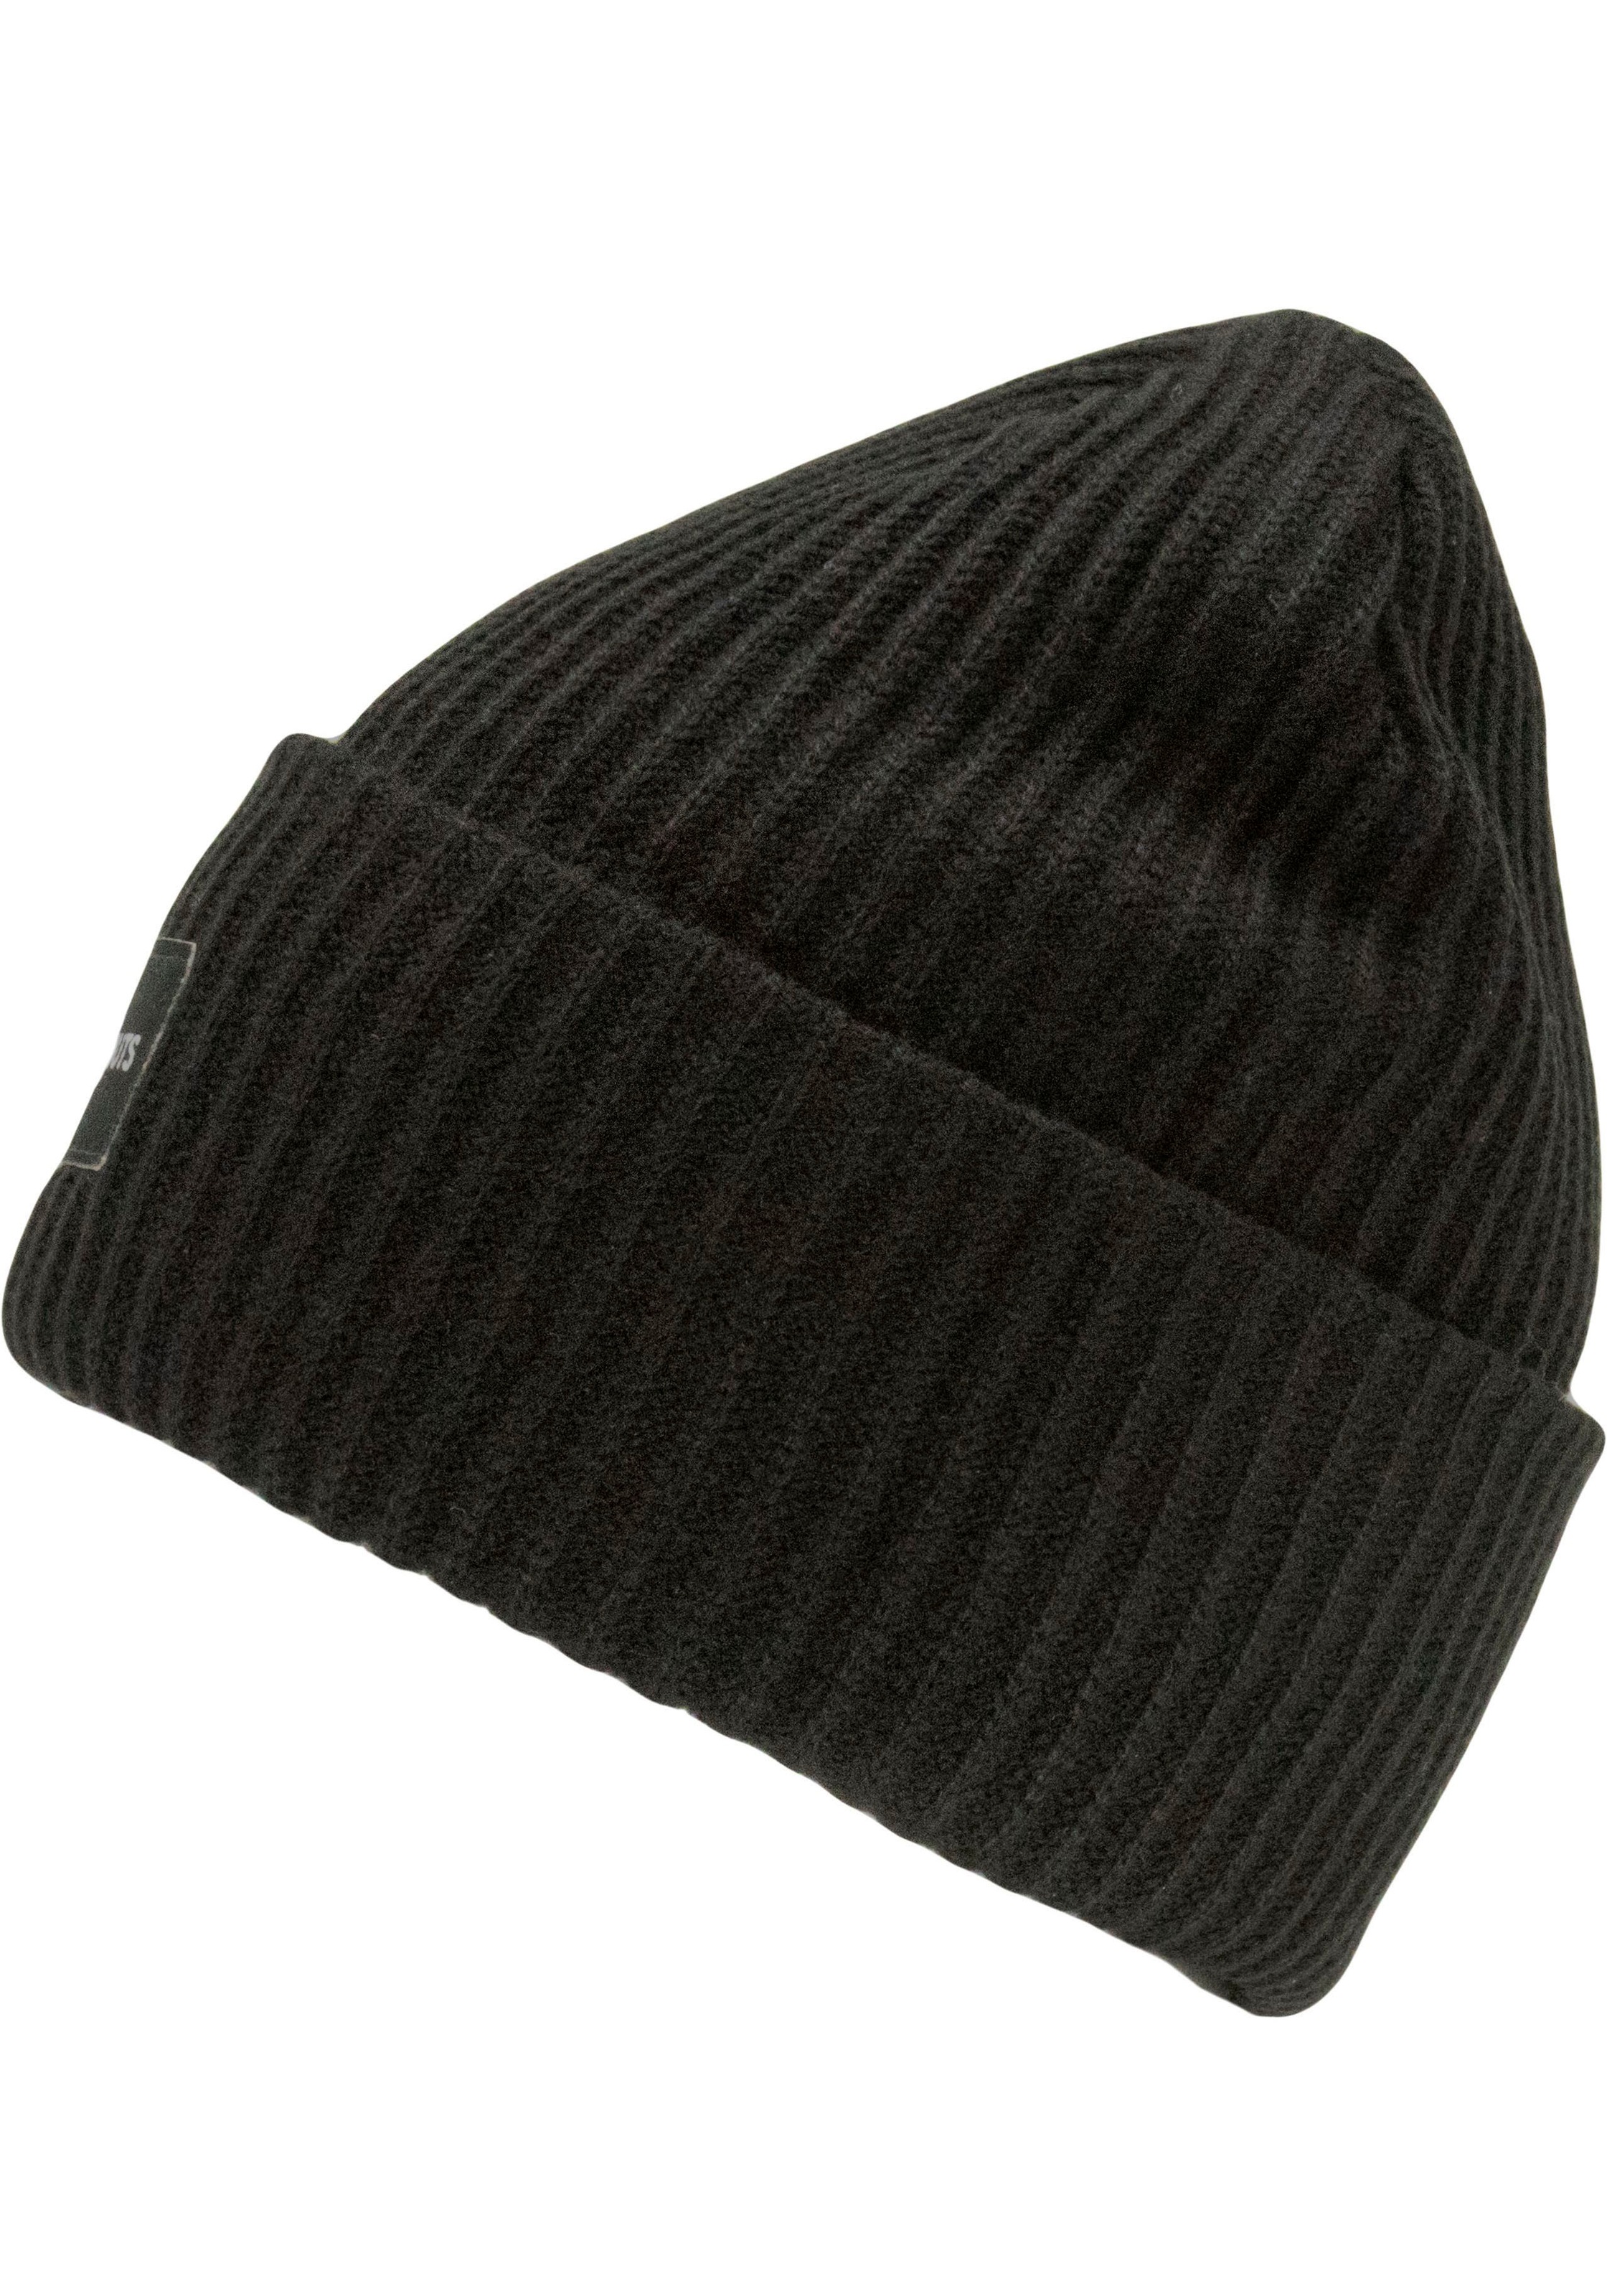 chillouts Strickmütze »Kara Hat«, Klassischer Rippenstrick